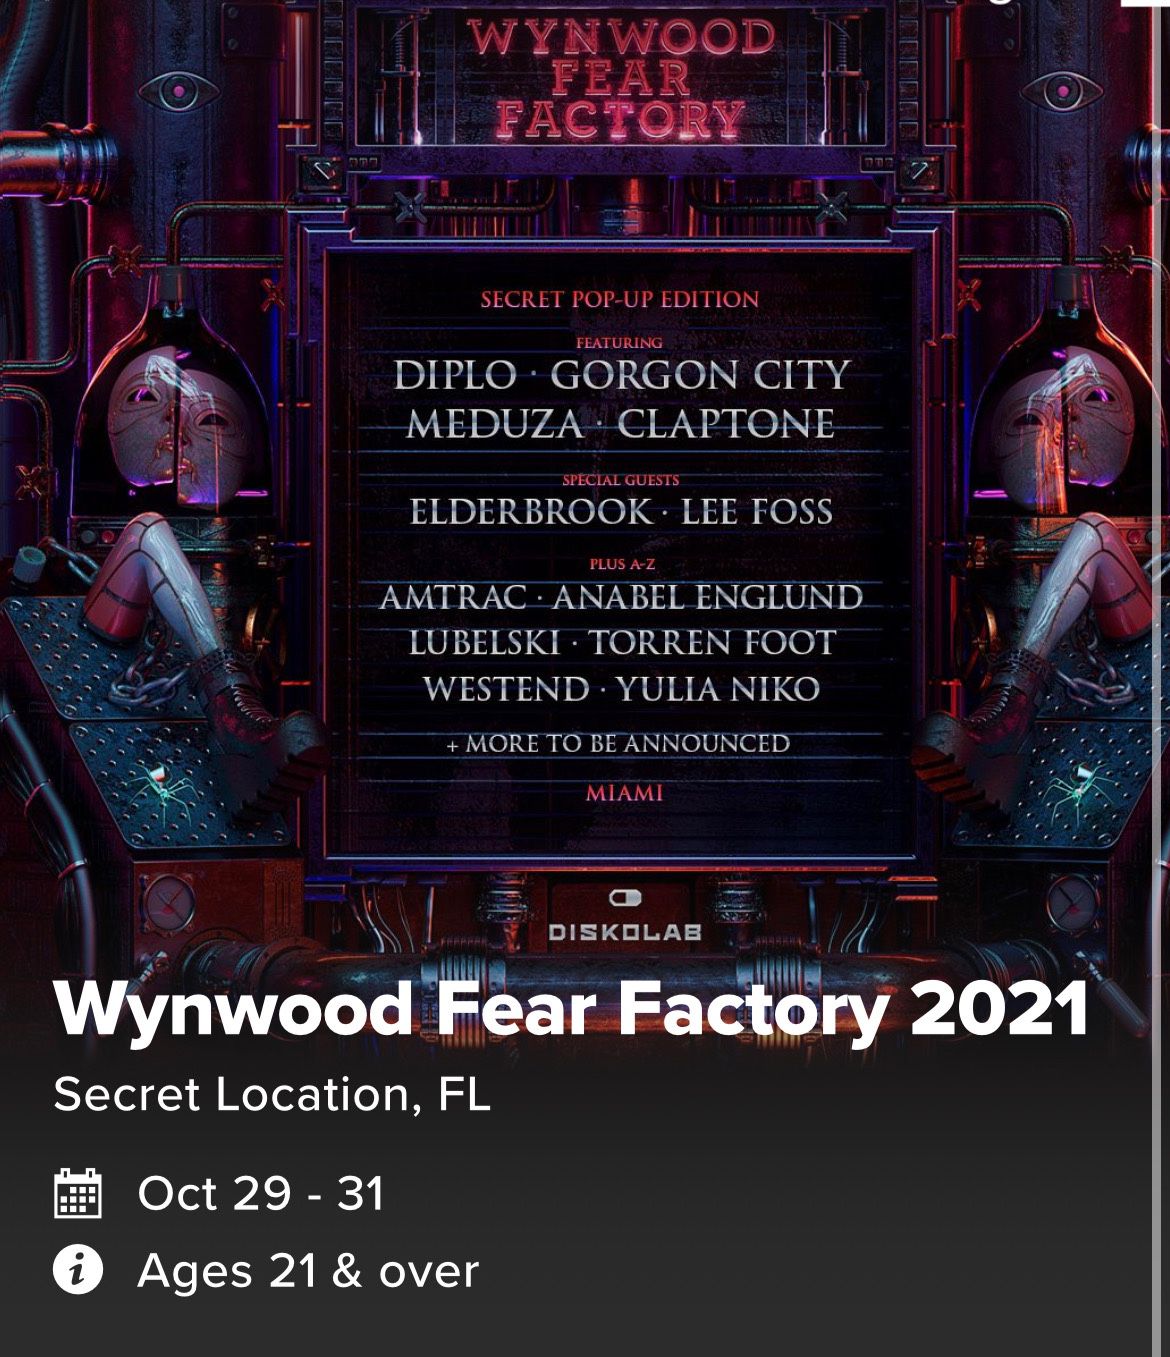 2 Wynwood Fear Factory tickets: Diplo & Meduza 